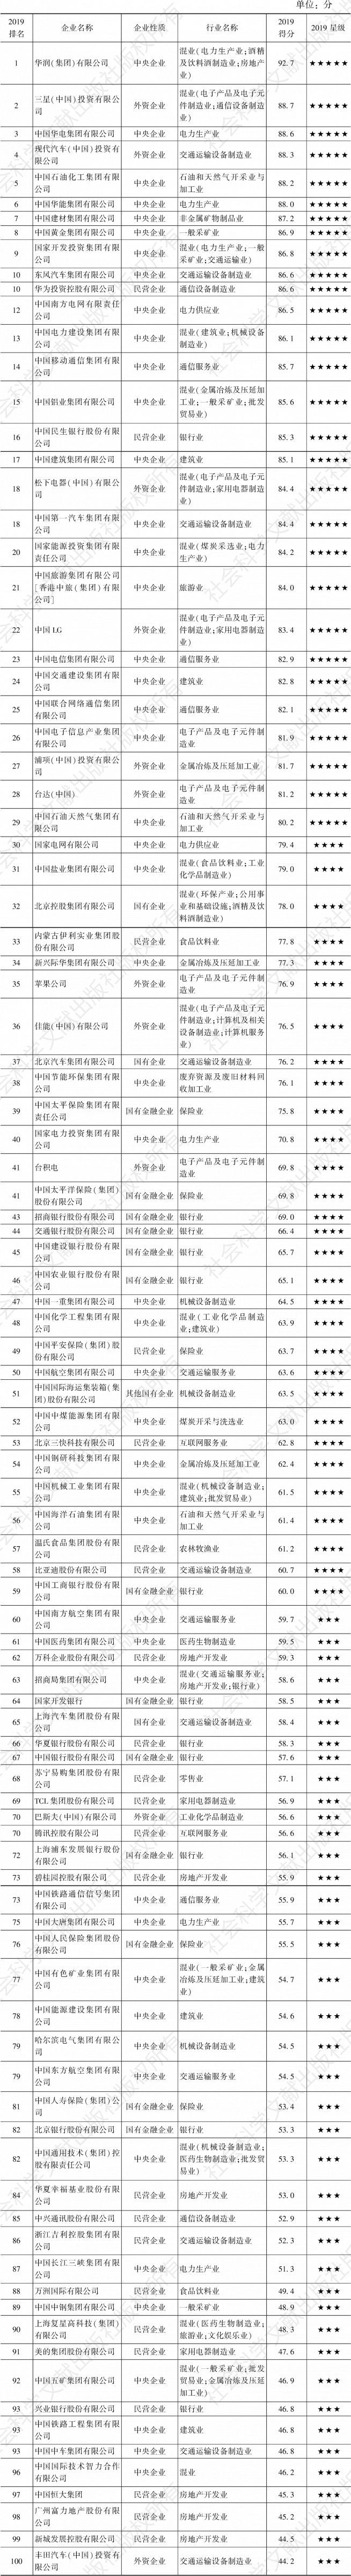 表5 中国企业300强社会责任发展指数前100位